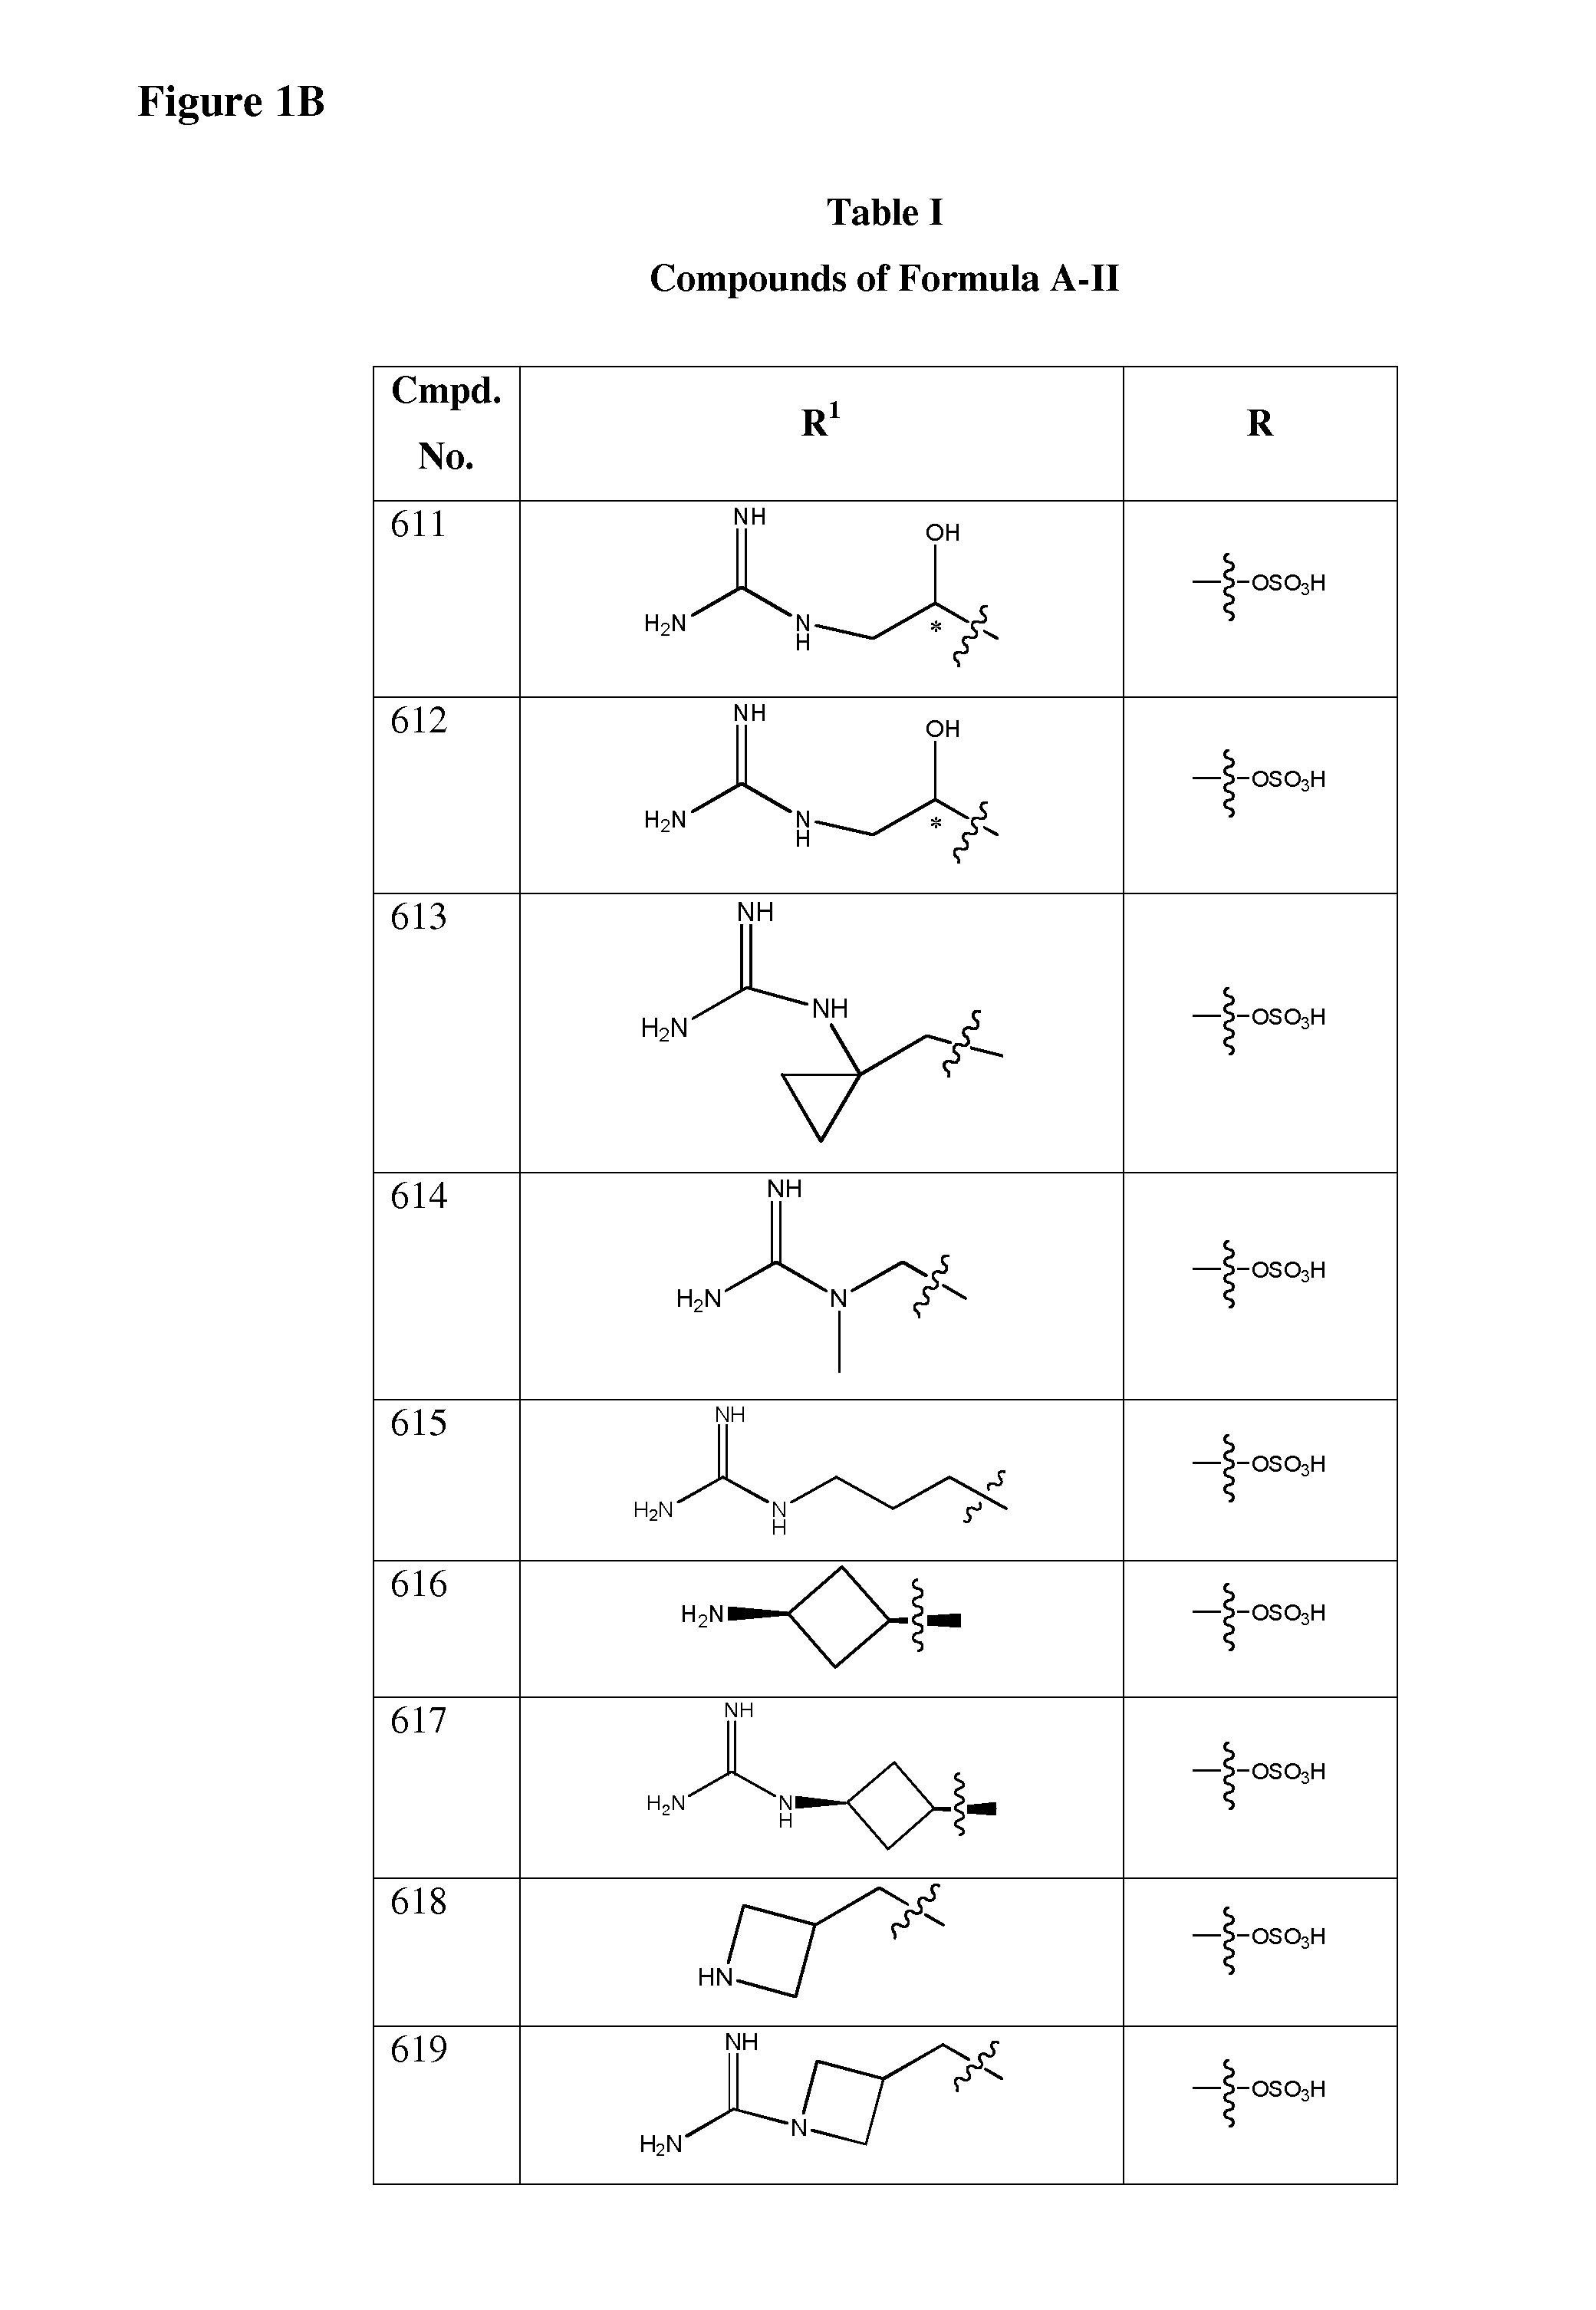 Isoxazole beta-lactamase inhibitors